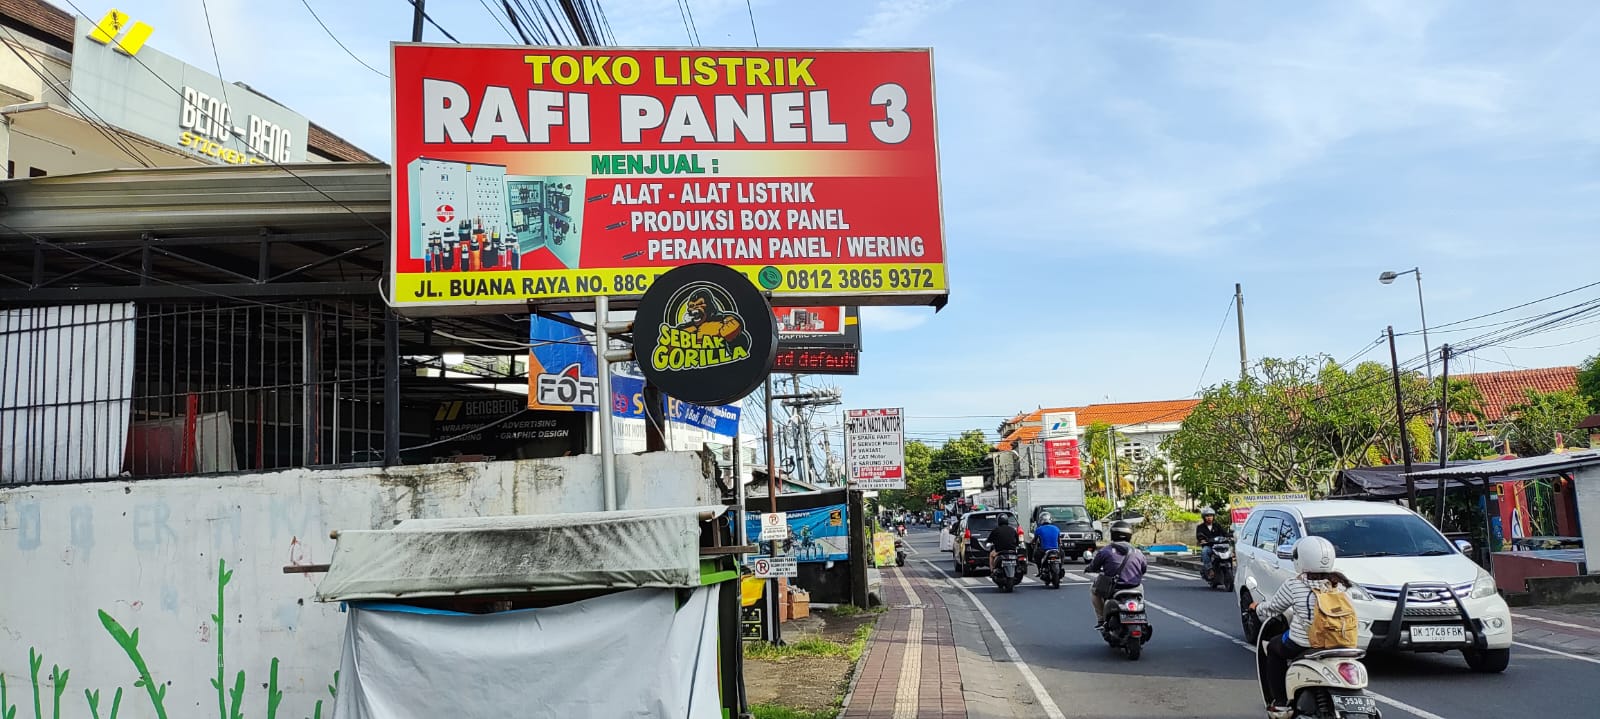 Rafi Panel 3, toko listrik paling rekomended di Bali yang menjual beragam produk